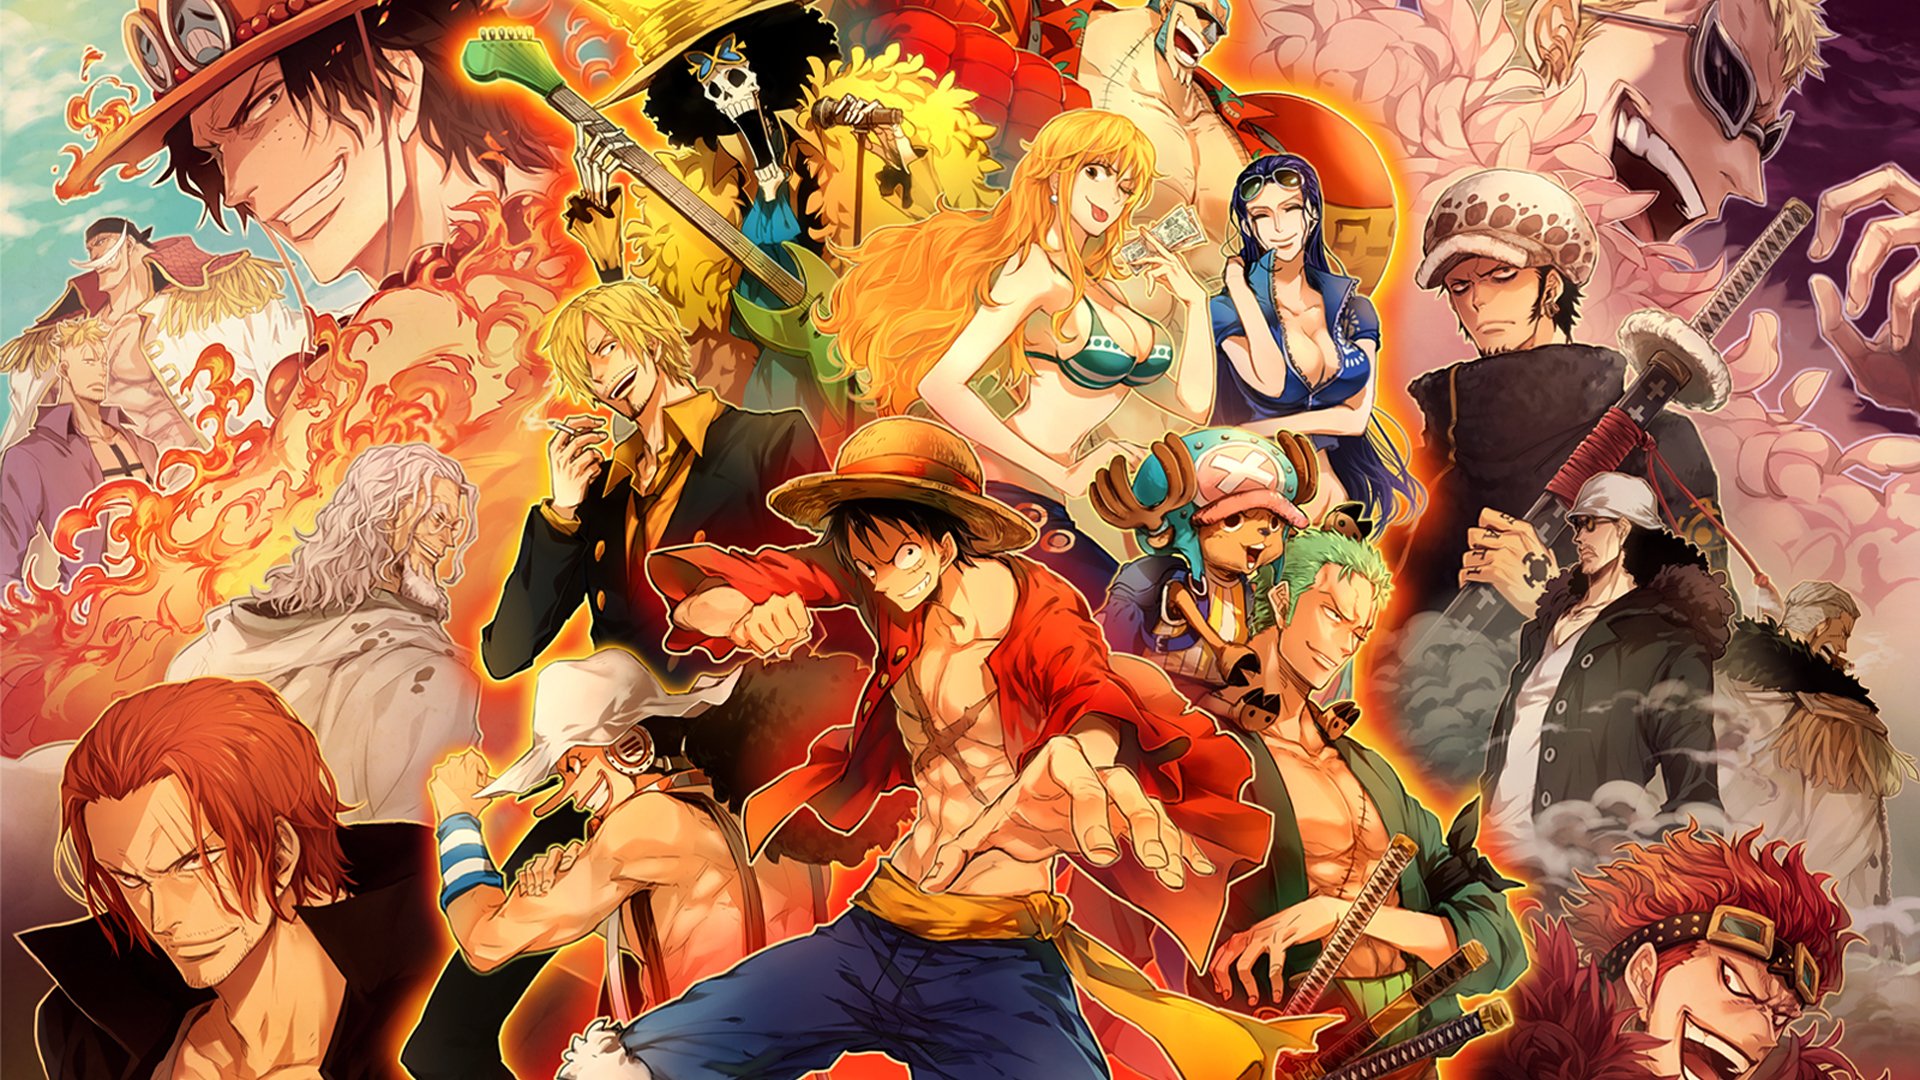 One Piece: Filme 1 – O Grande Pirata do Ouro